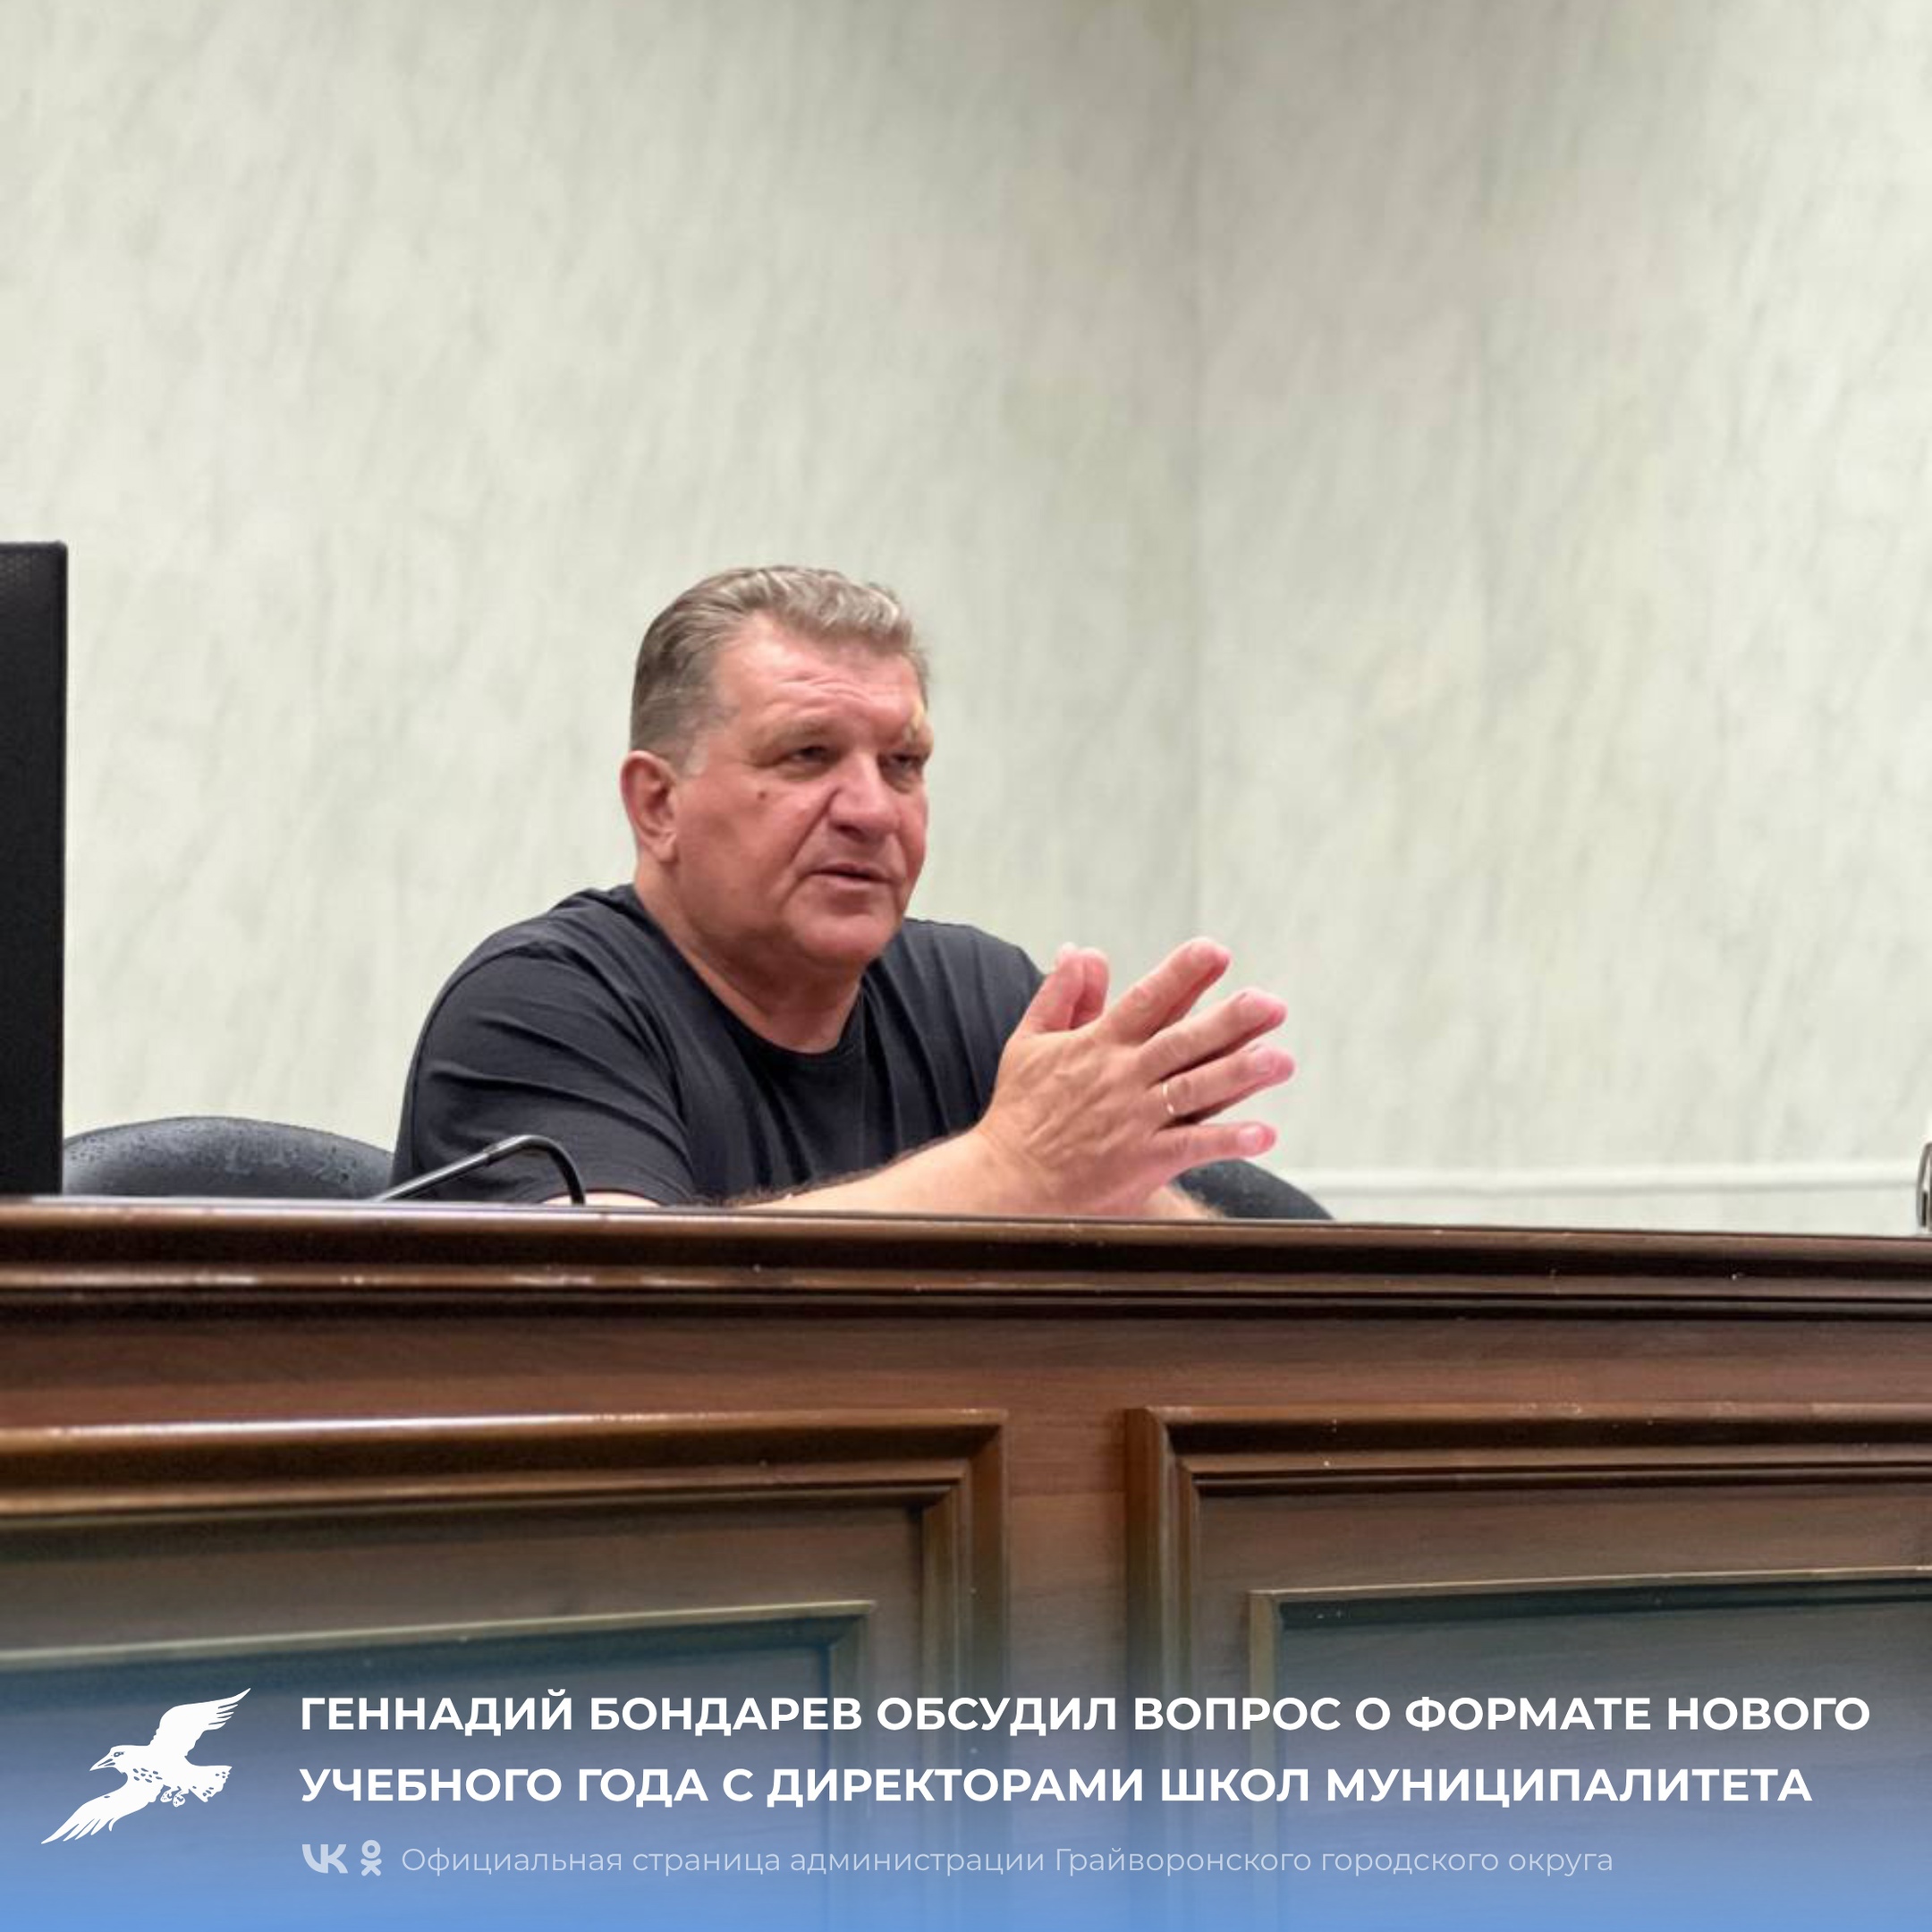 Геннадий Бондарев обсудил вопрос о формате нового учебного года с директорами школ муниципалитета.